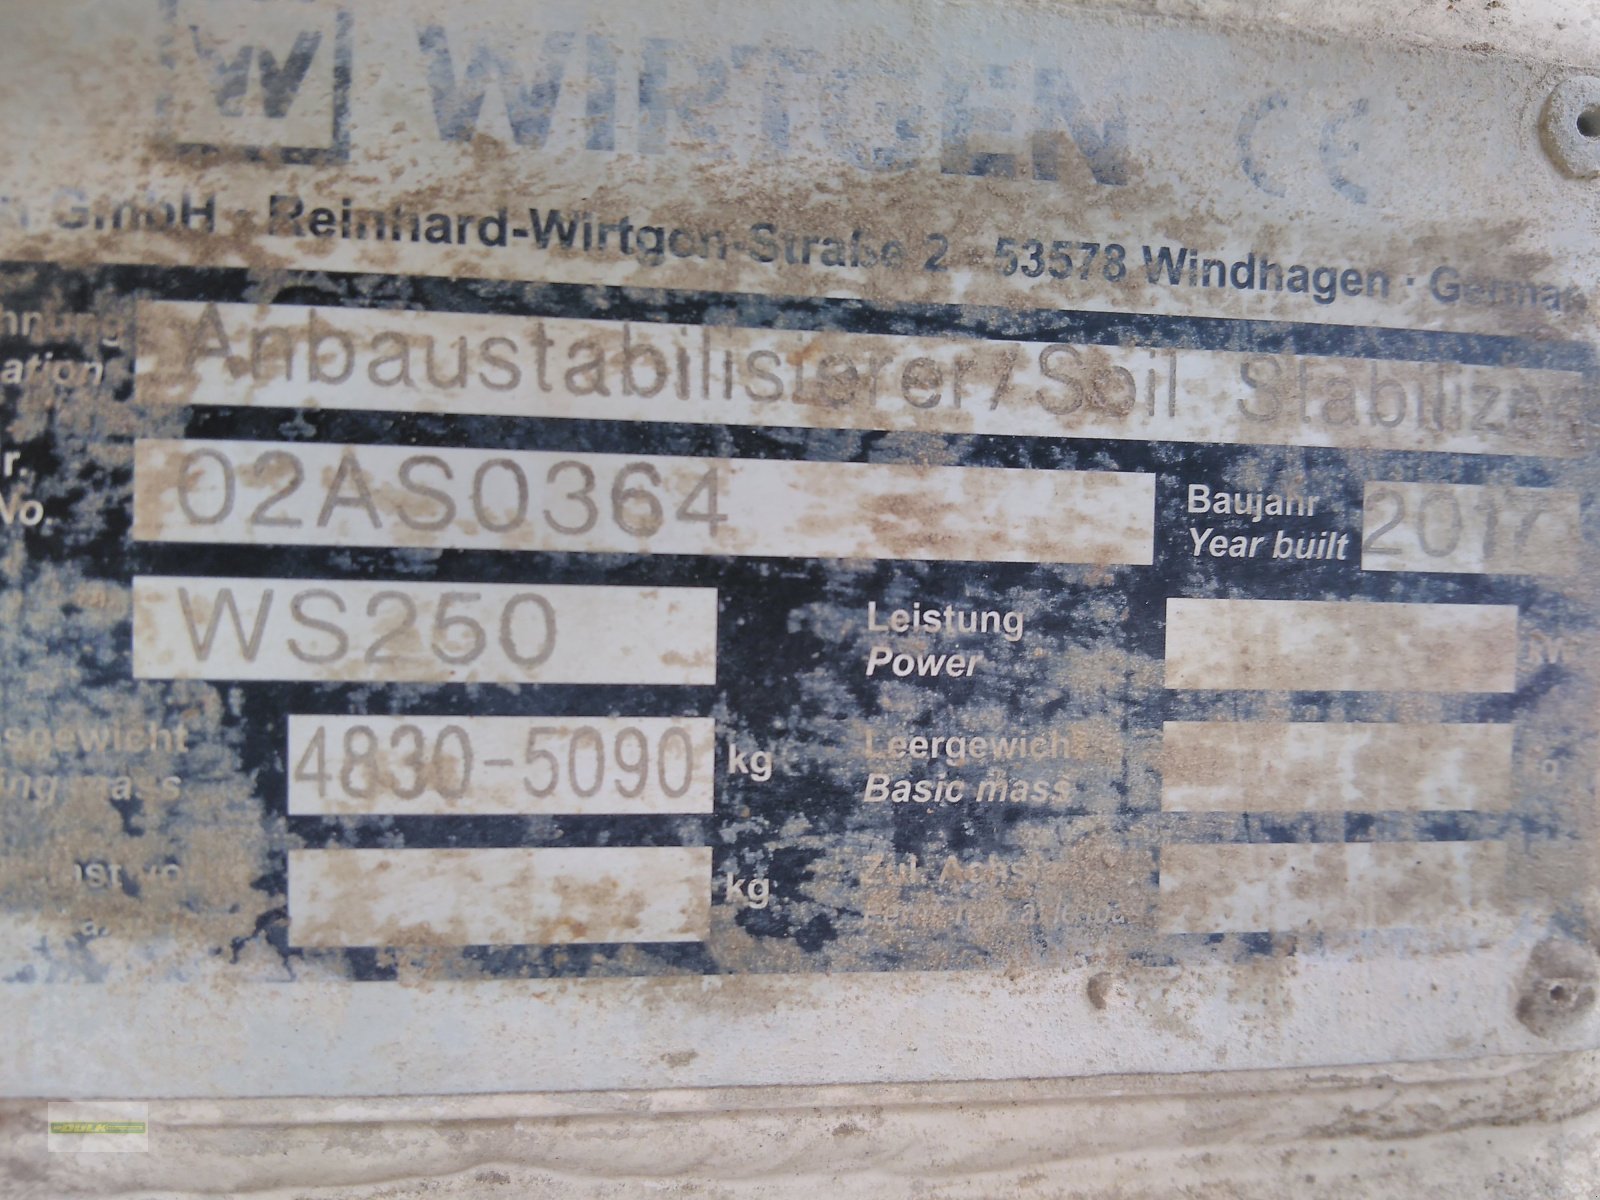 Bodenfräse типа Wirtgen WS 250, Gebrauchtmaschine в Donnersdorf (Фотография 3)